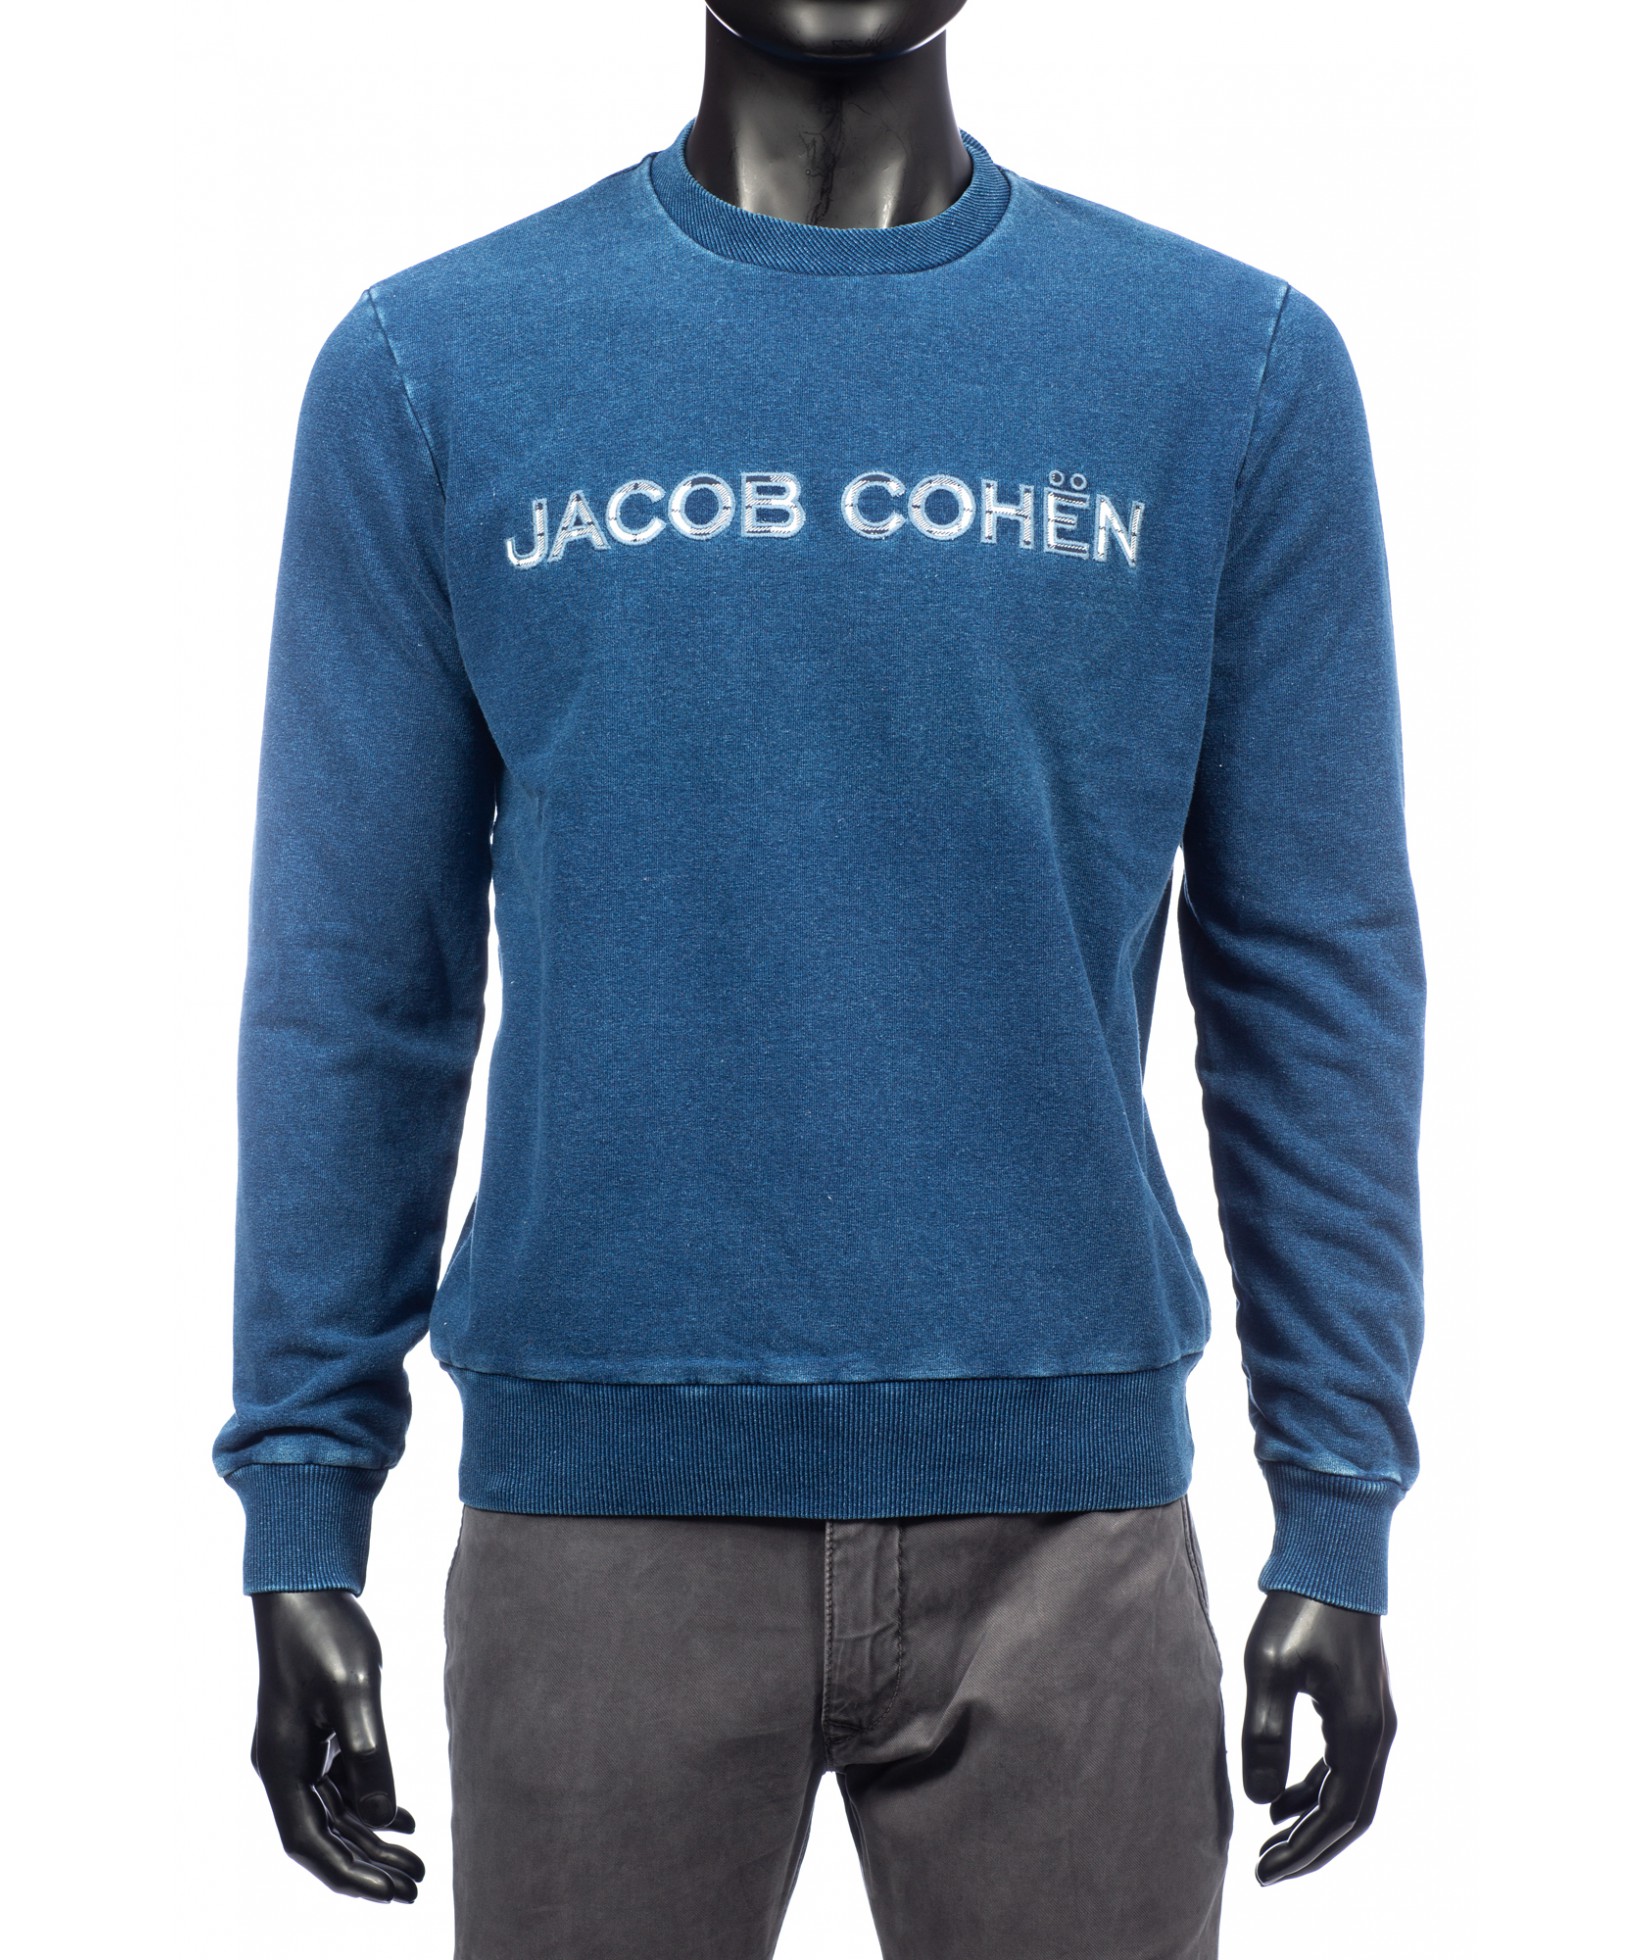 Jacob Cohen Sweater Blue (29629)